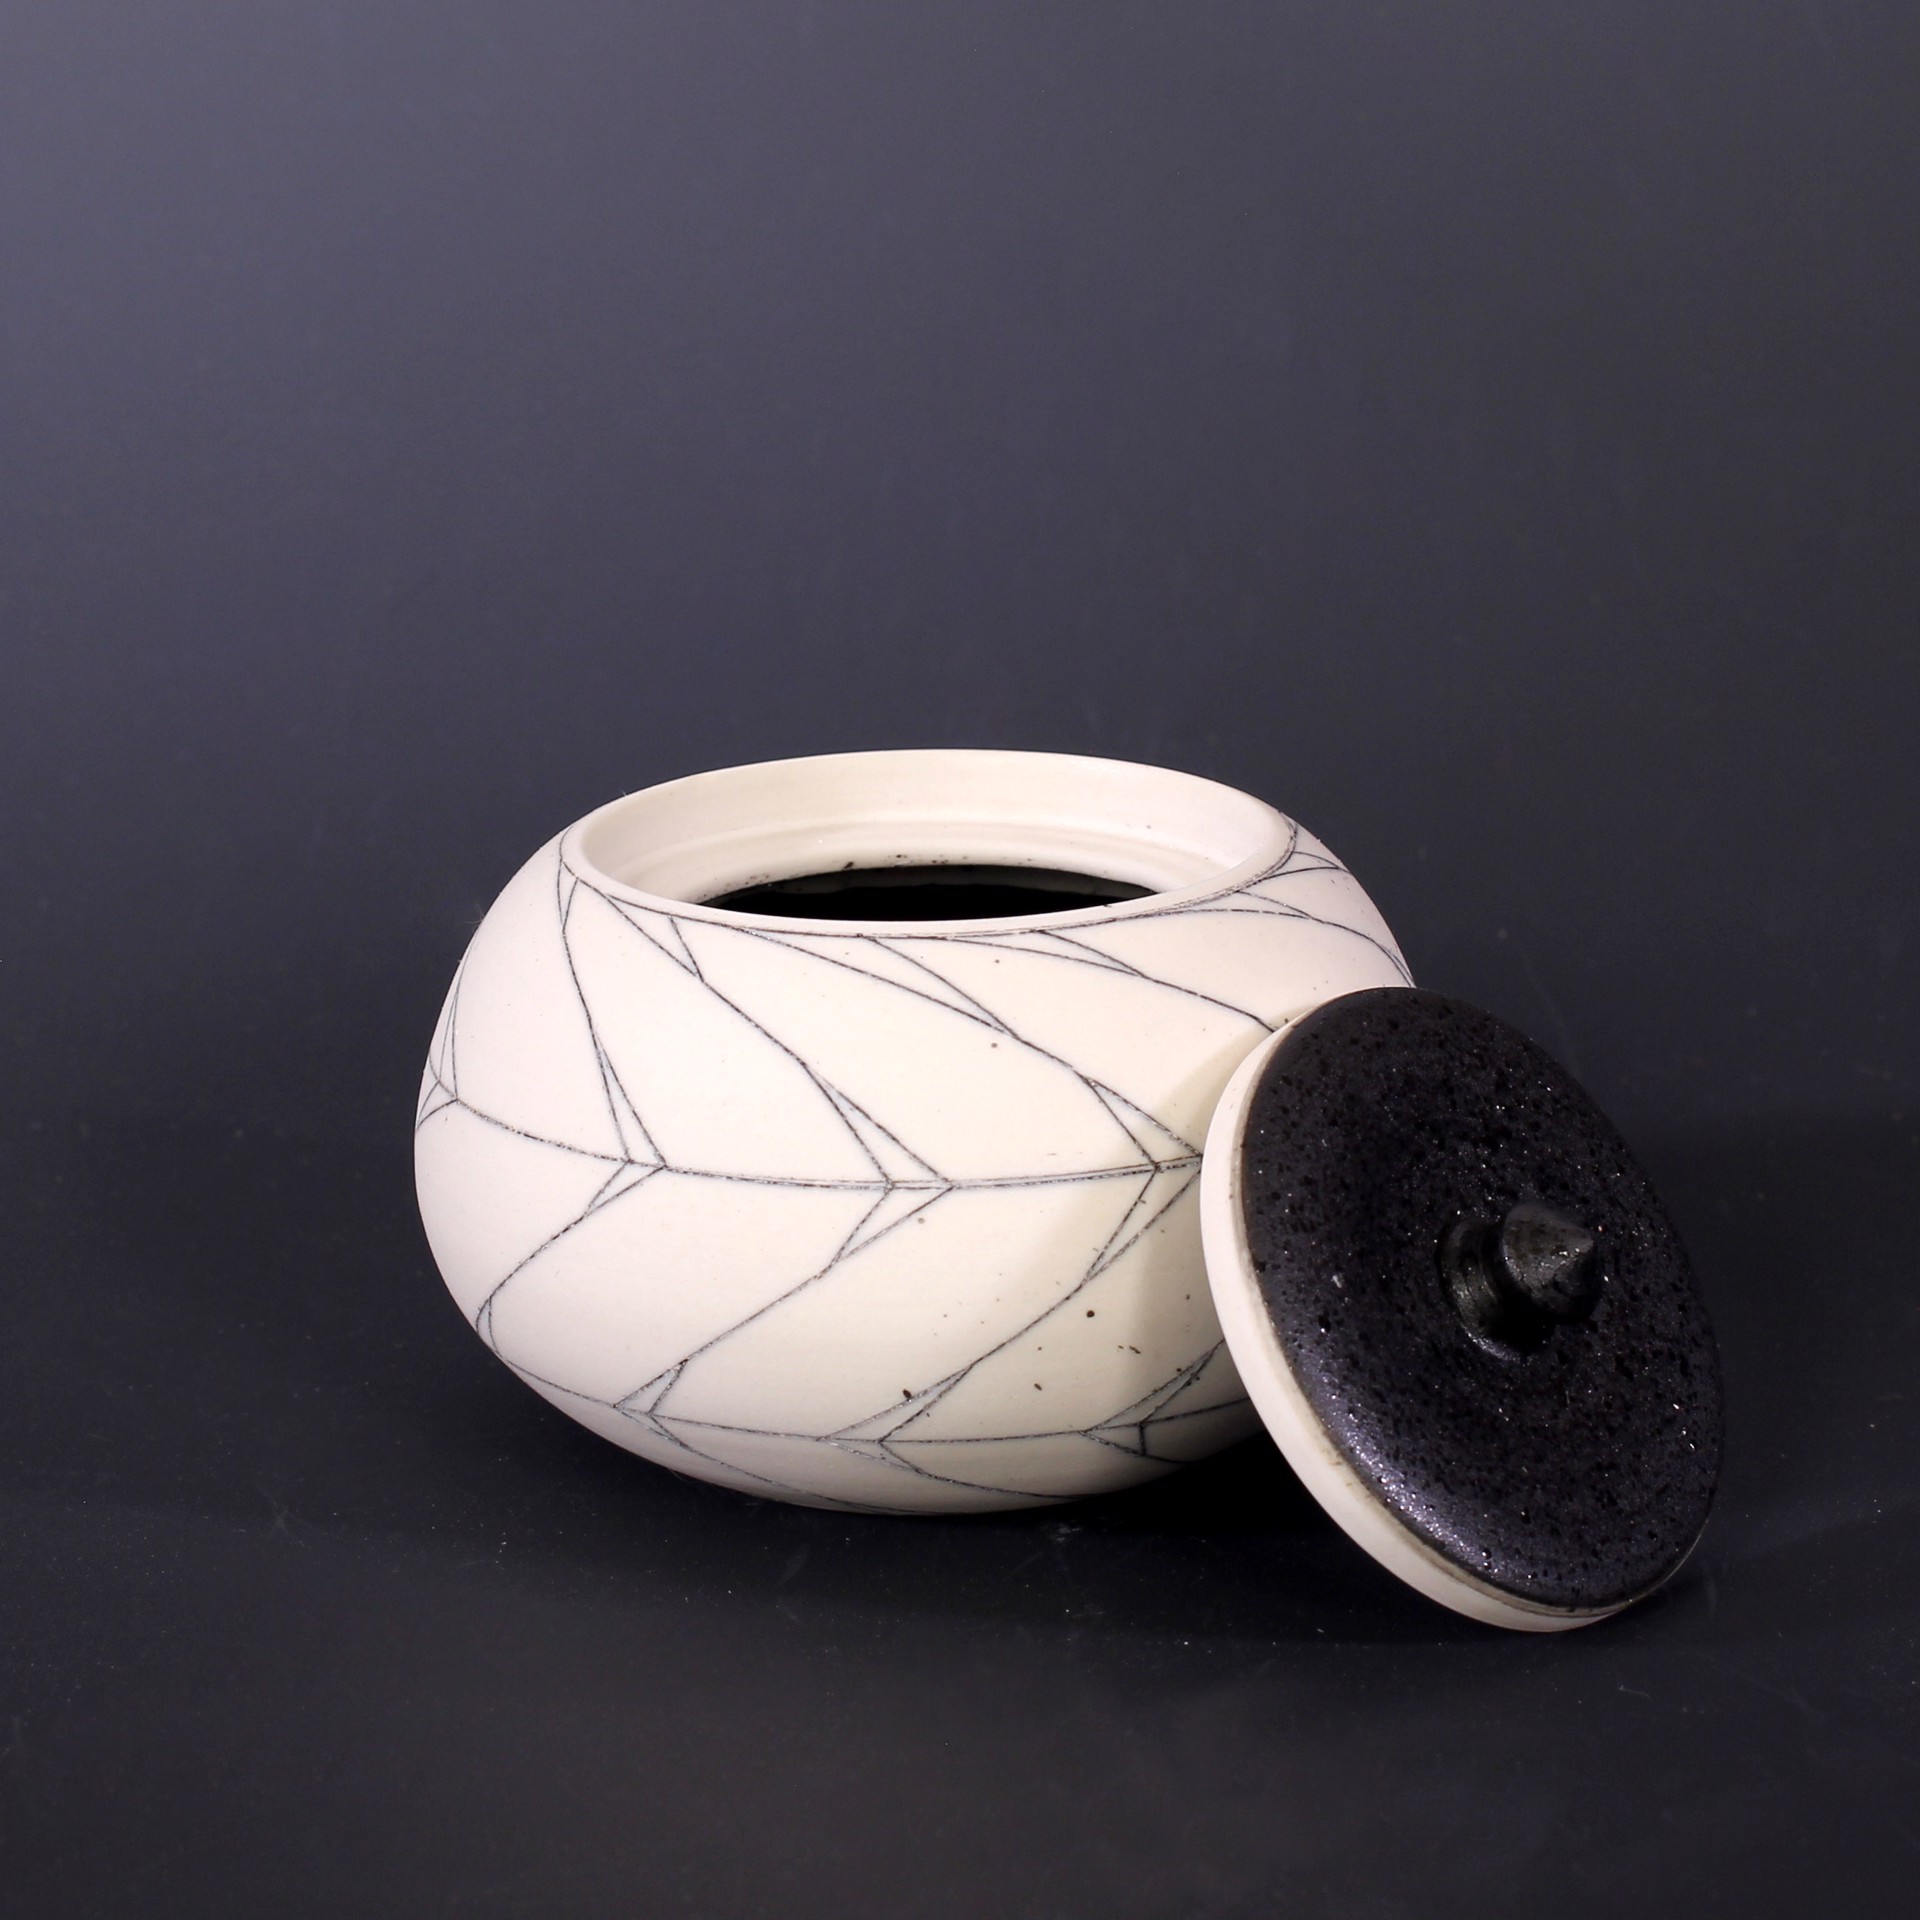 Herringbone Jar by Bianka Groves